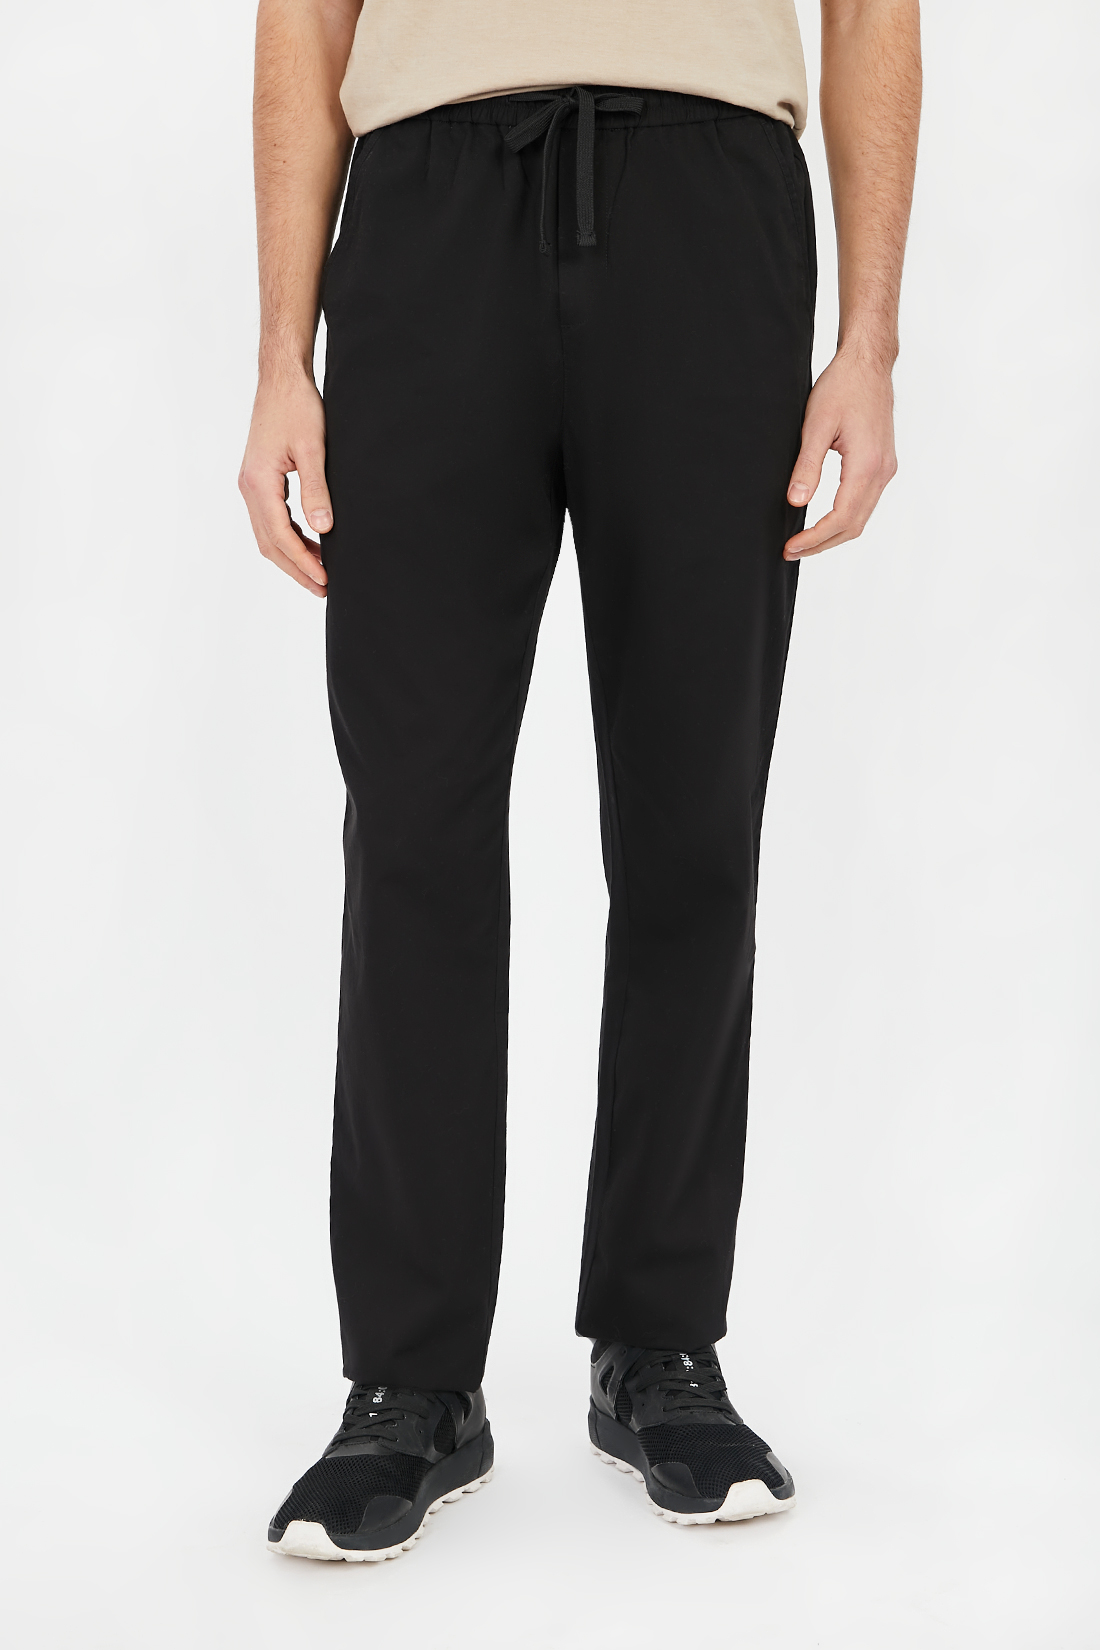 Спортивные брюки мужские Baon B791201 черные 2XL